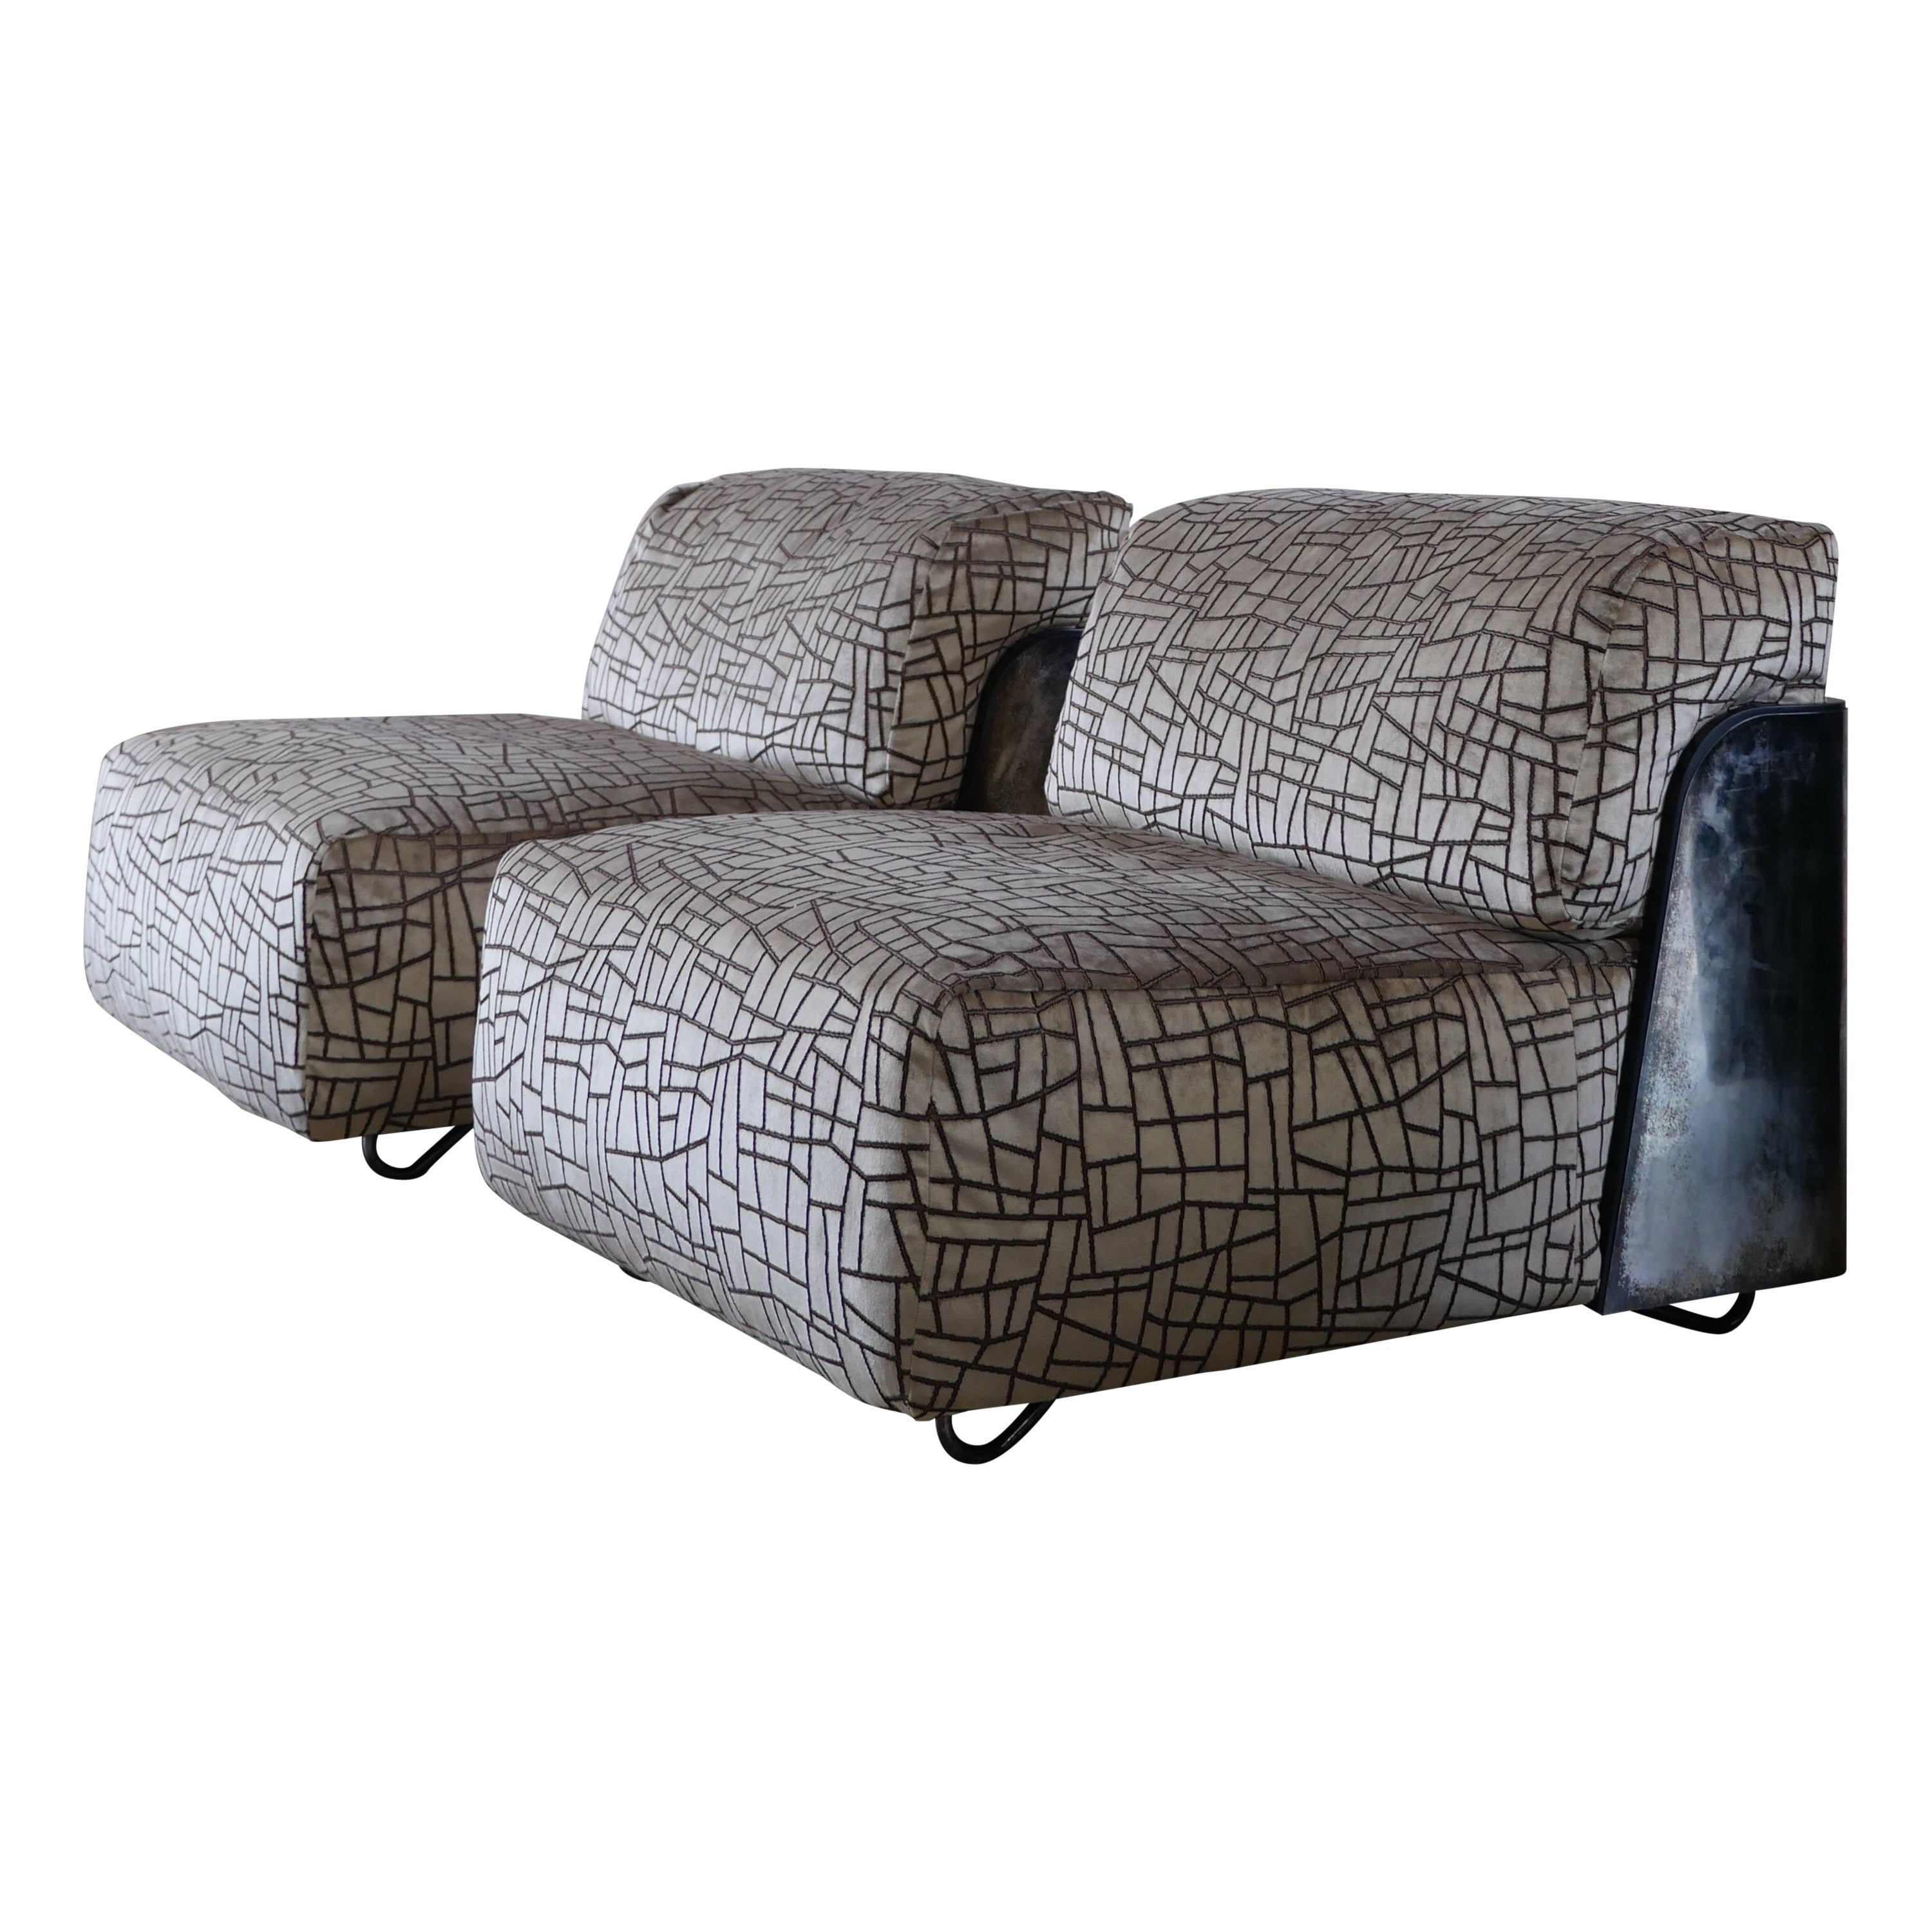 Moderner Saint-Germain Lounge Chair des italienischen Designers Gio Pagani - 2er-Set